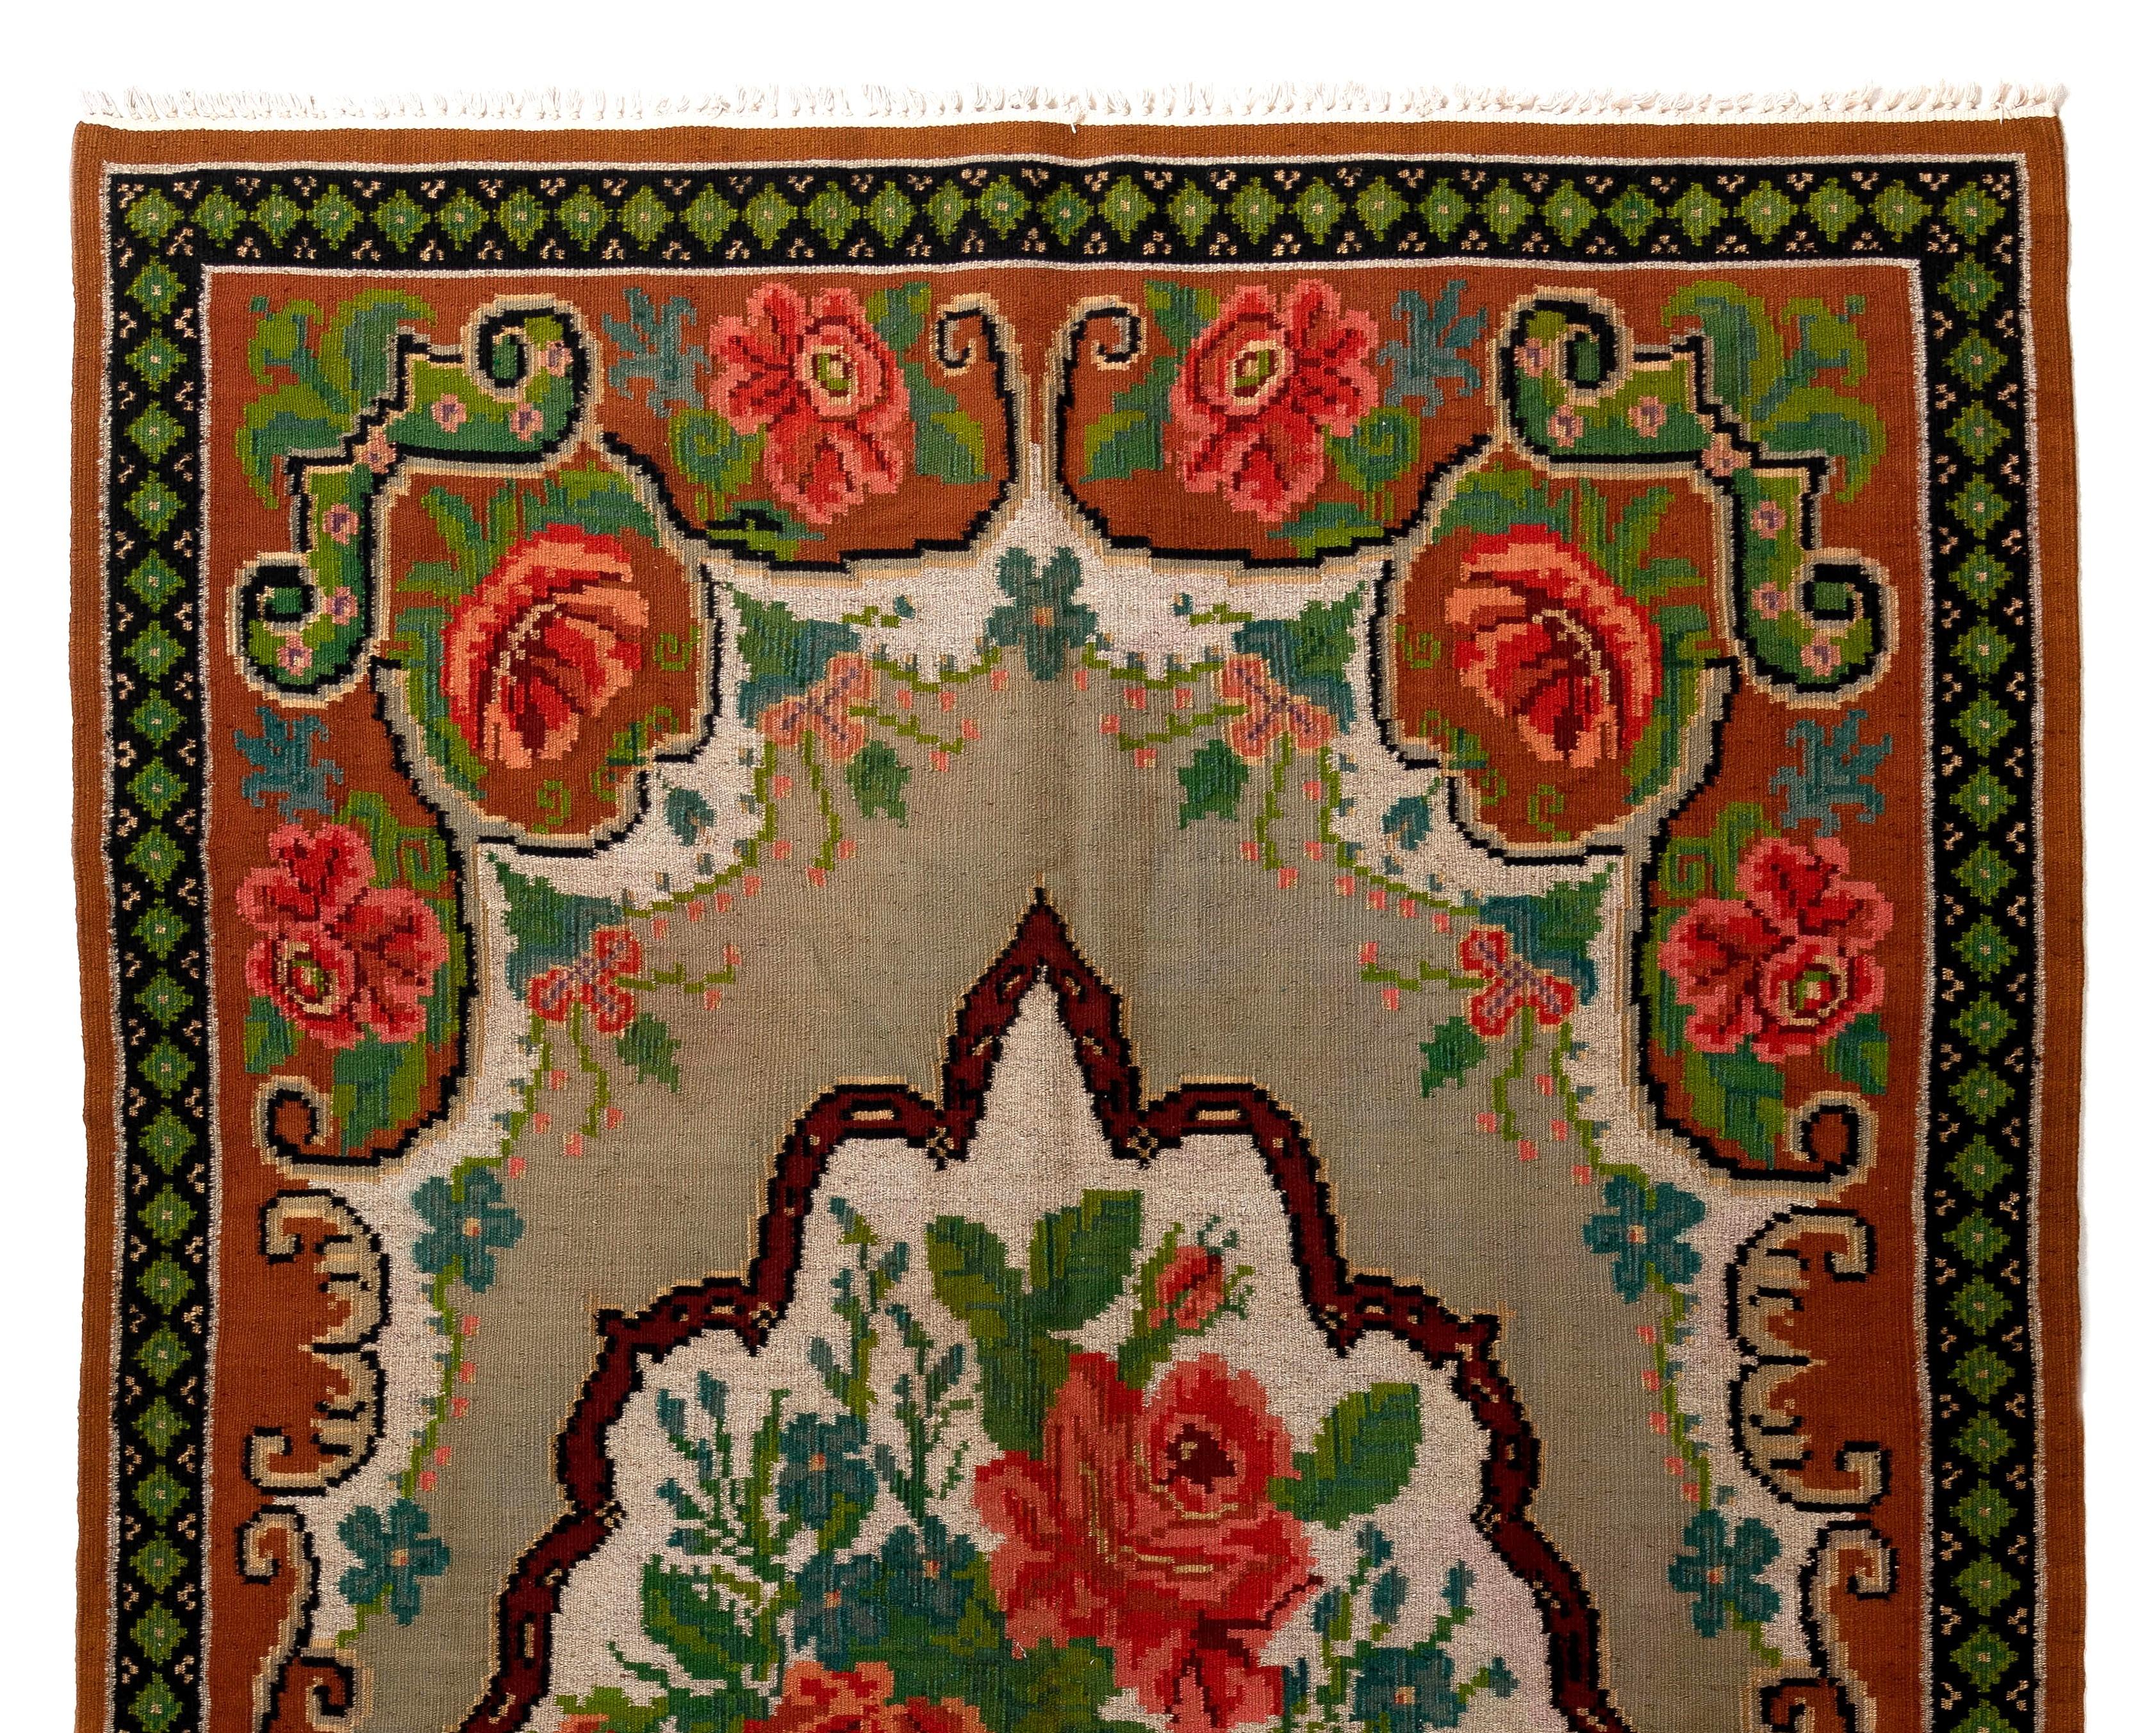 Einzigartiger vintage bessarabischer Kelim. Maße: 5,3 x 8,8 ft
Ein handgewebter osteuropäischer Teppich aus Moldawien. Diese traditionellen moldauischen Flachgewebe sind von alten Aubusson-Teppichen inspiriert, zeichnen sich jedoch durch ihren